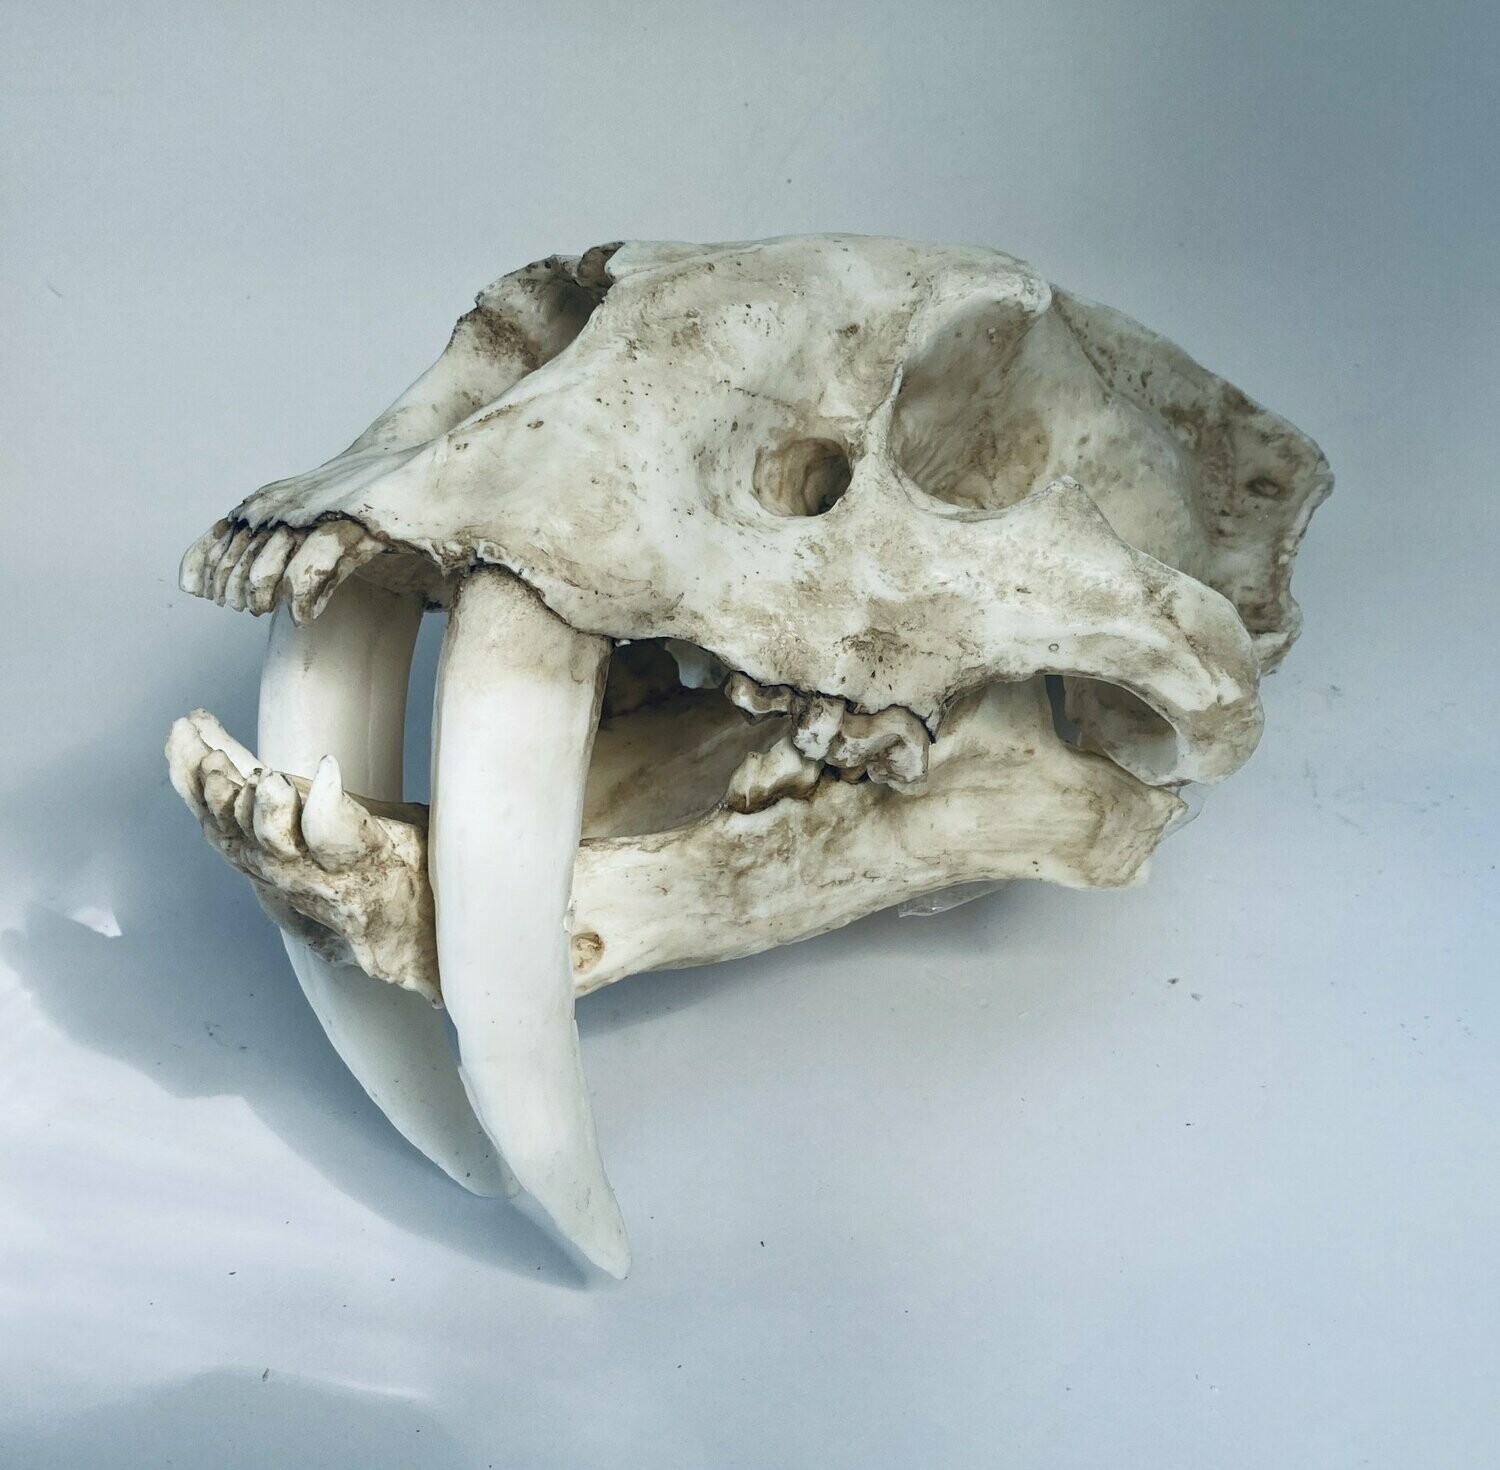 Sabertoothed-tiger skull